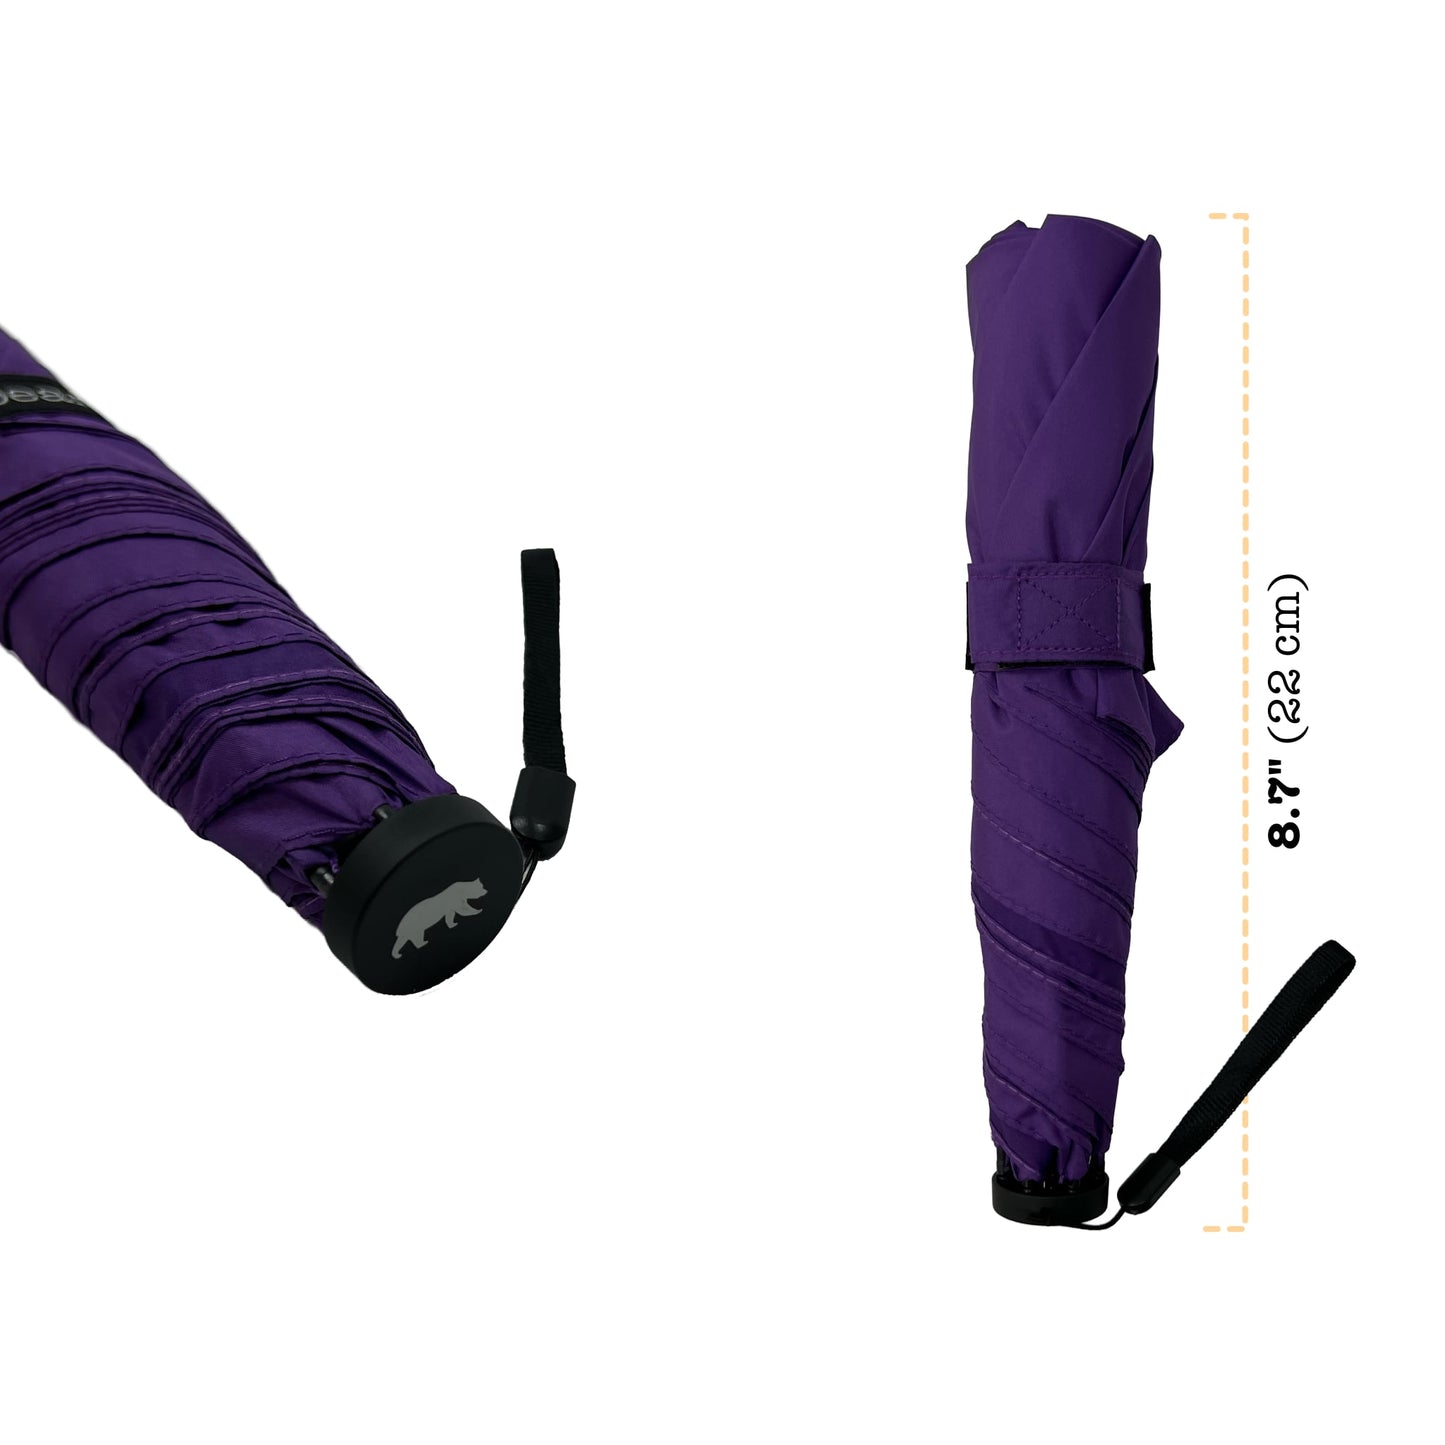 Manual 42-inch Ultra Lightweight Carbon Fiber Ribs Windproof Repellent Umbrella